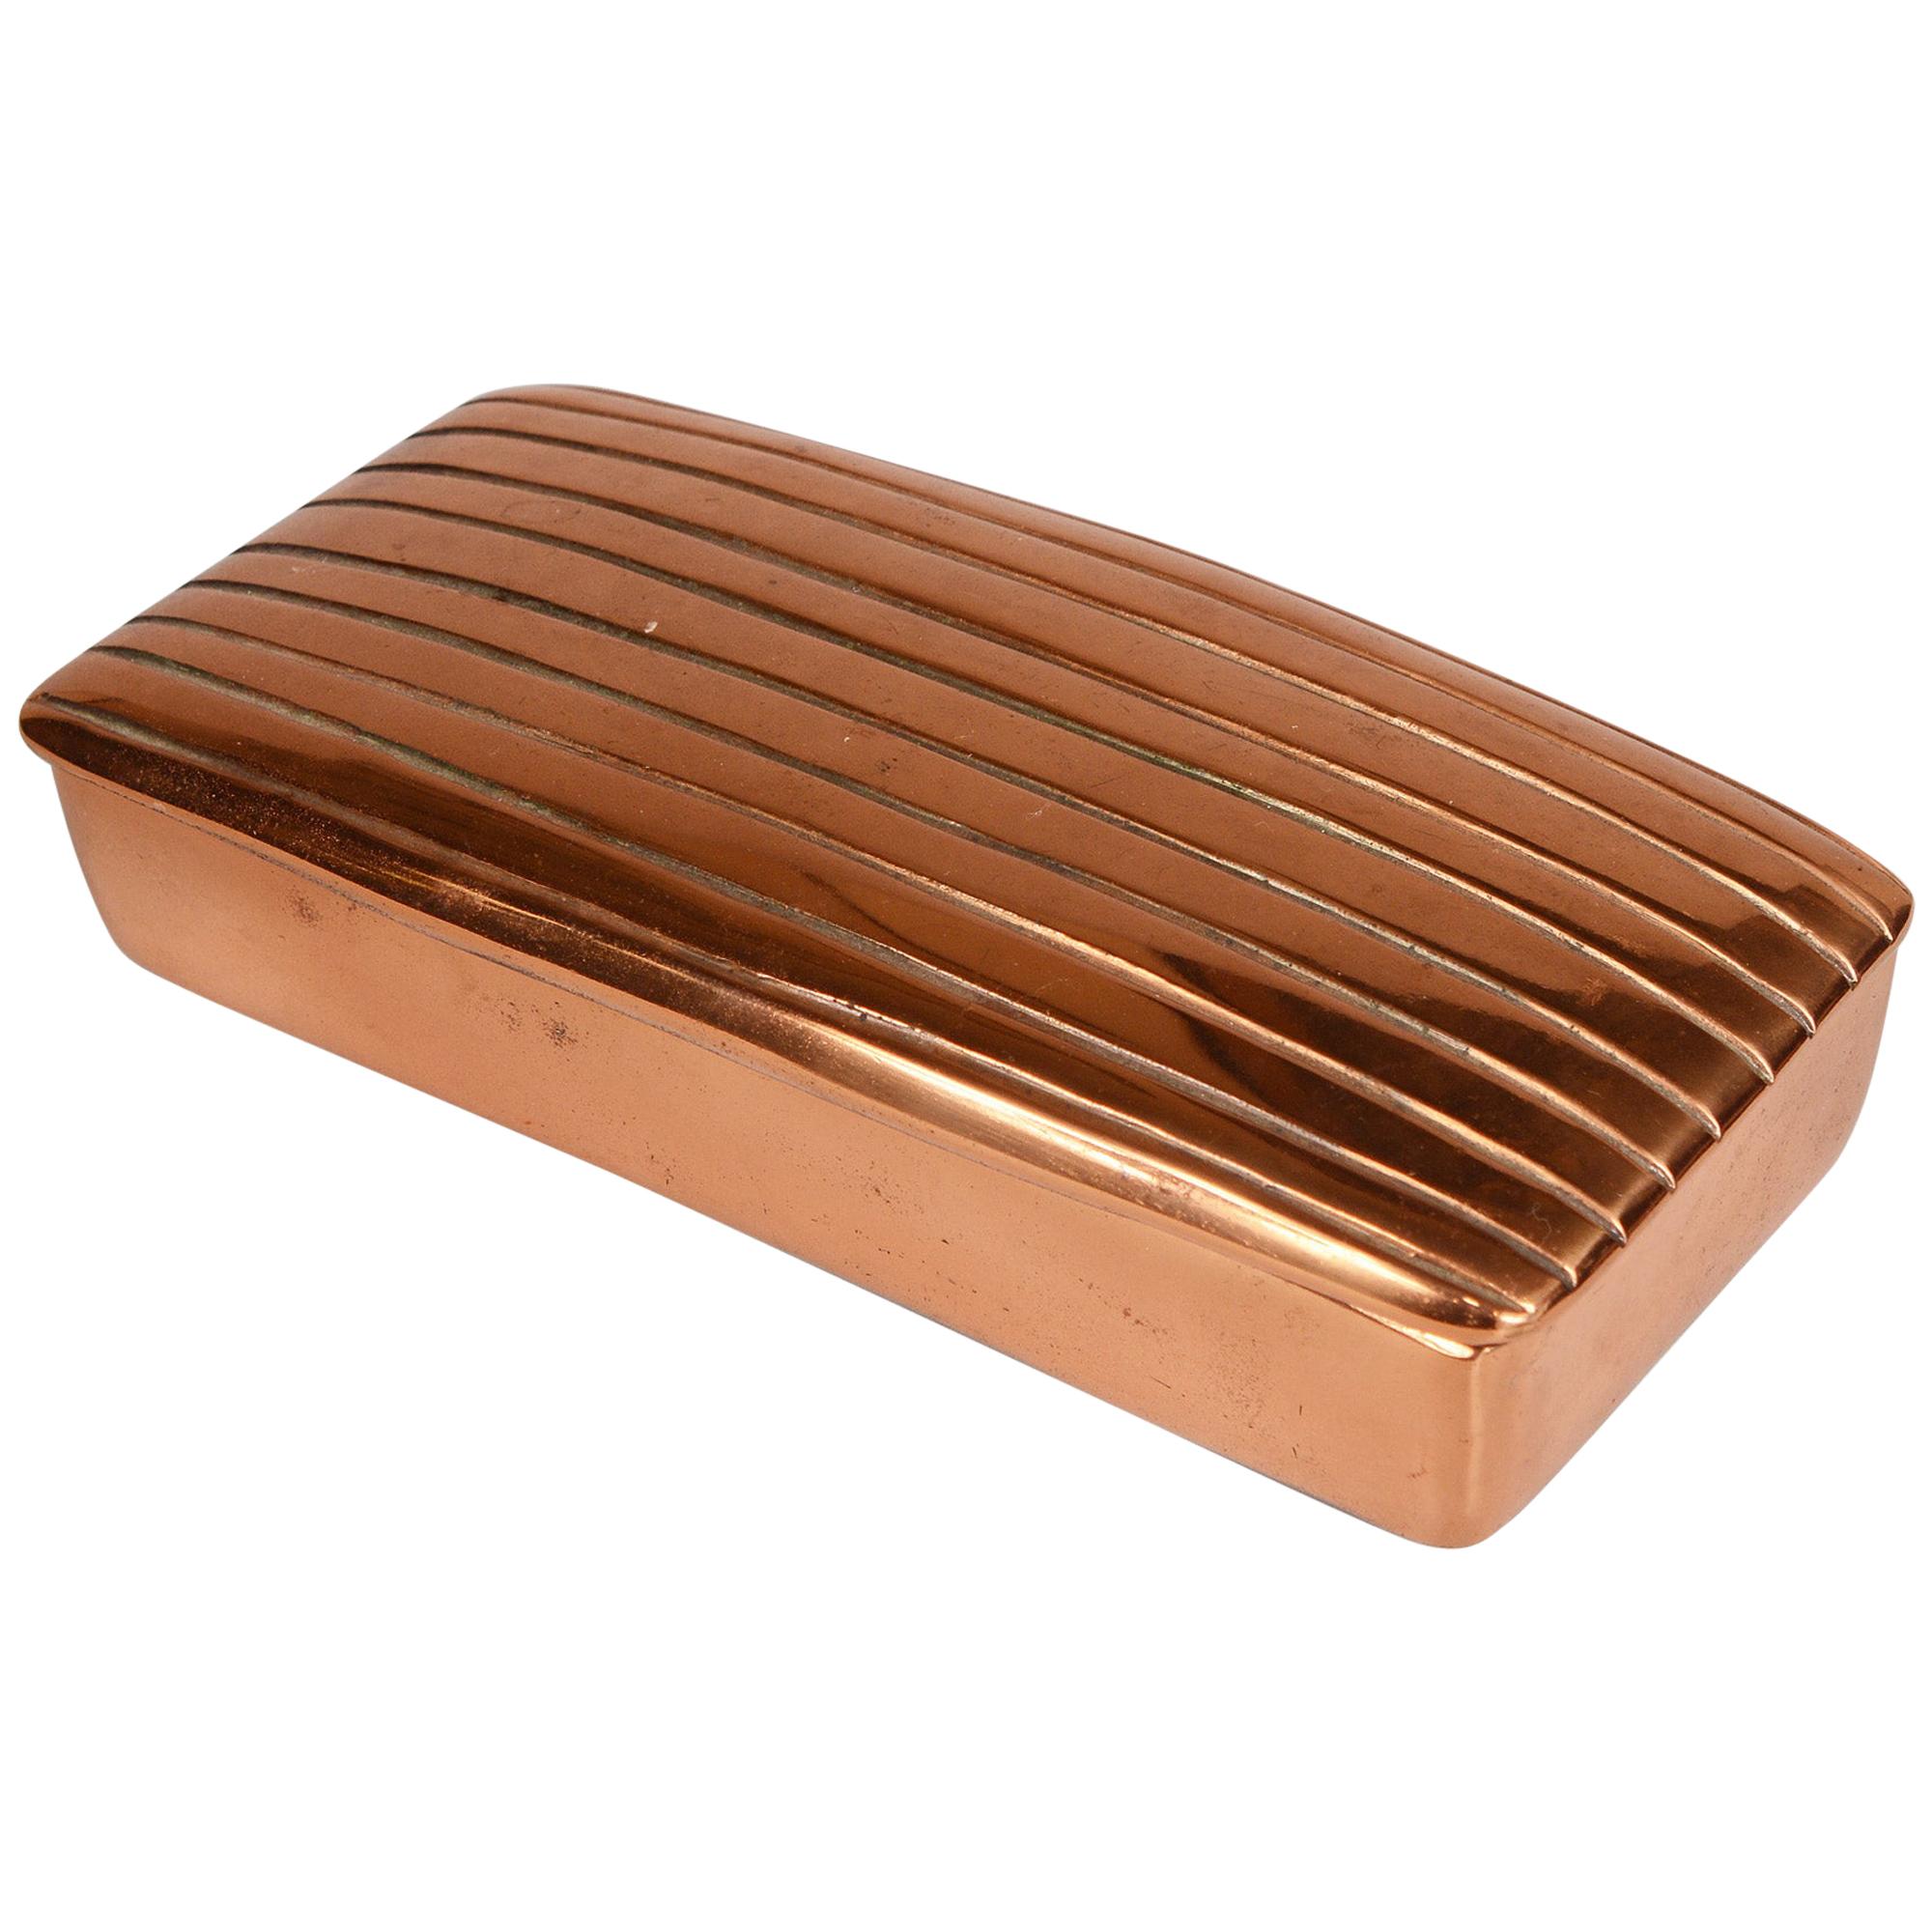 Jenfred-Ware Copper Box by Ben Seibel